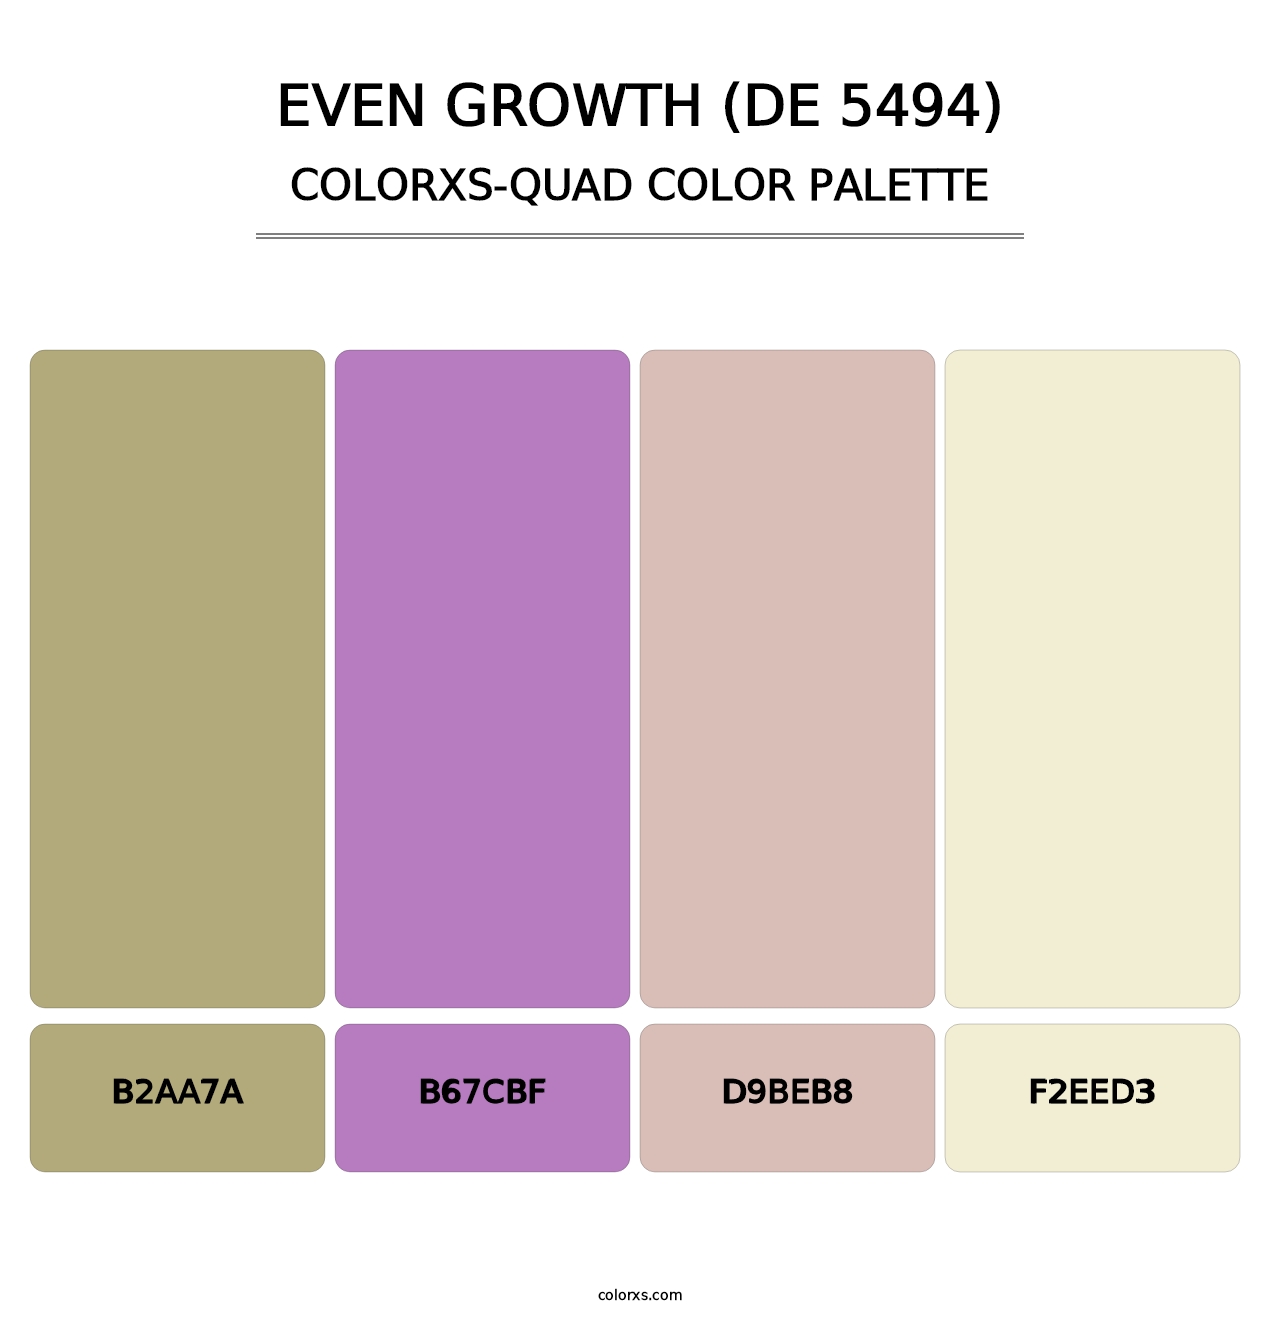 Even Growth (DE 5494) - Colorxs Quad Palette